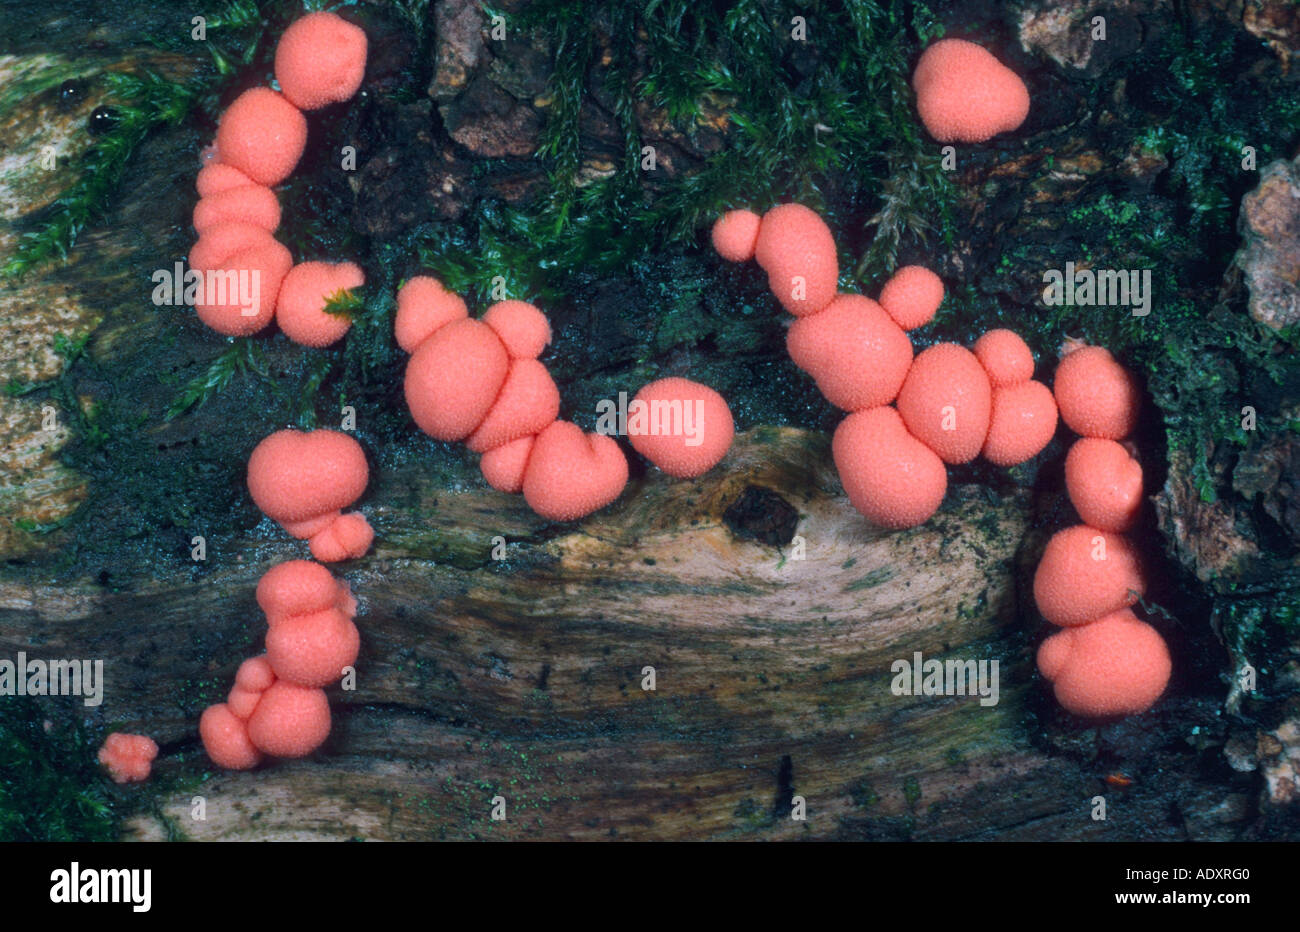 mushroom (Lycogala epidendron), Germany Stock Photo